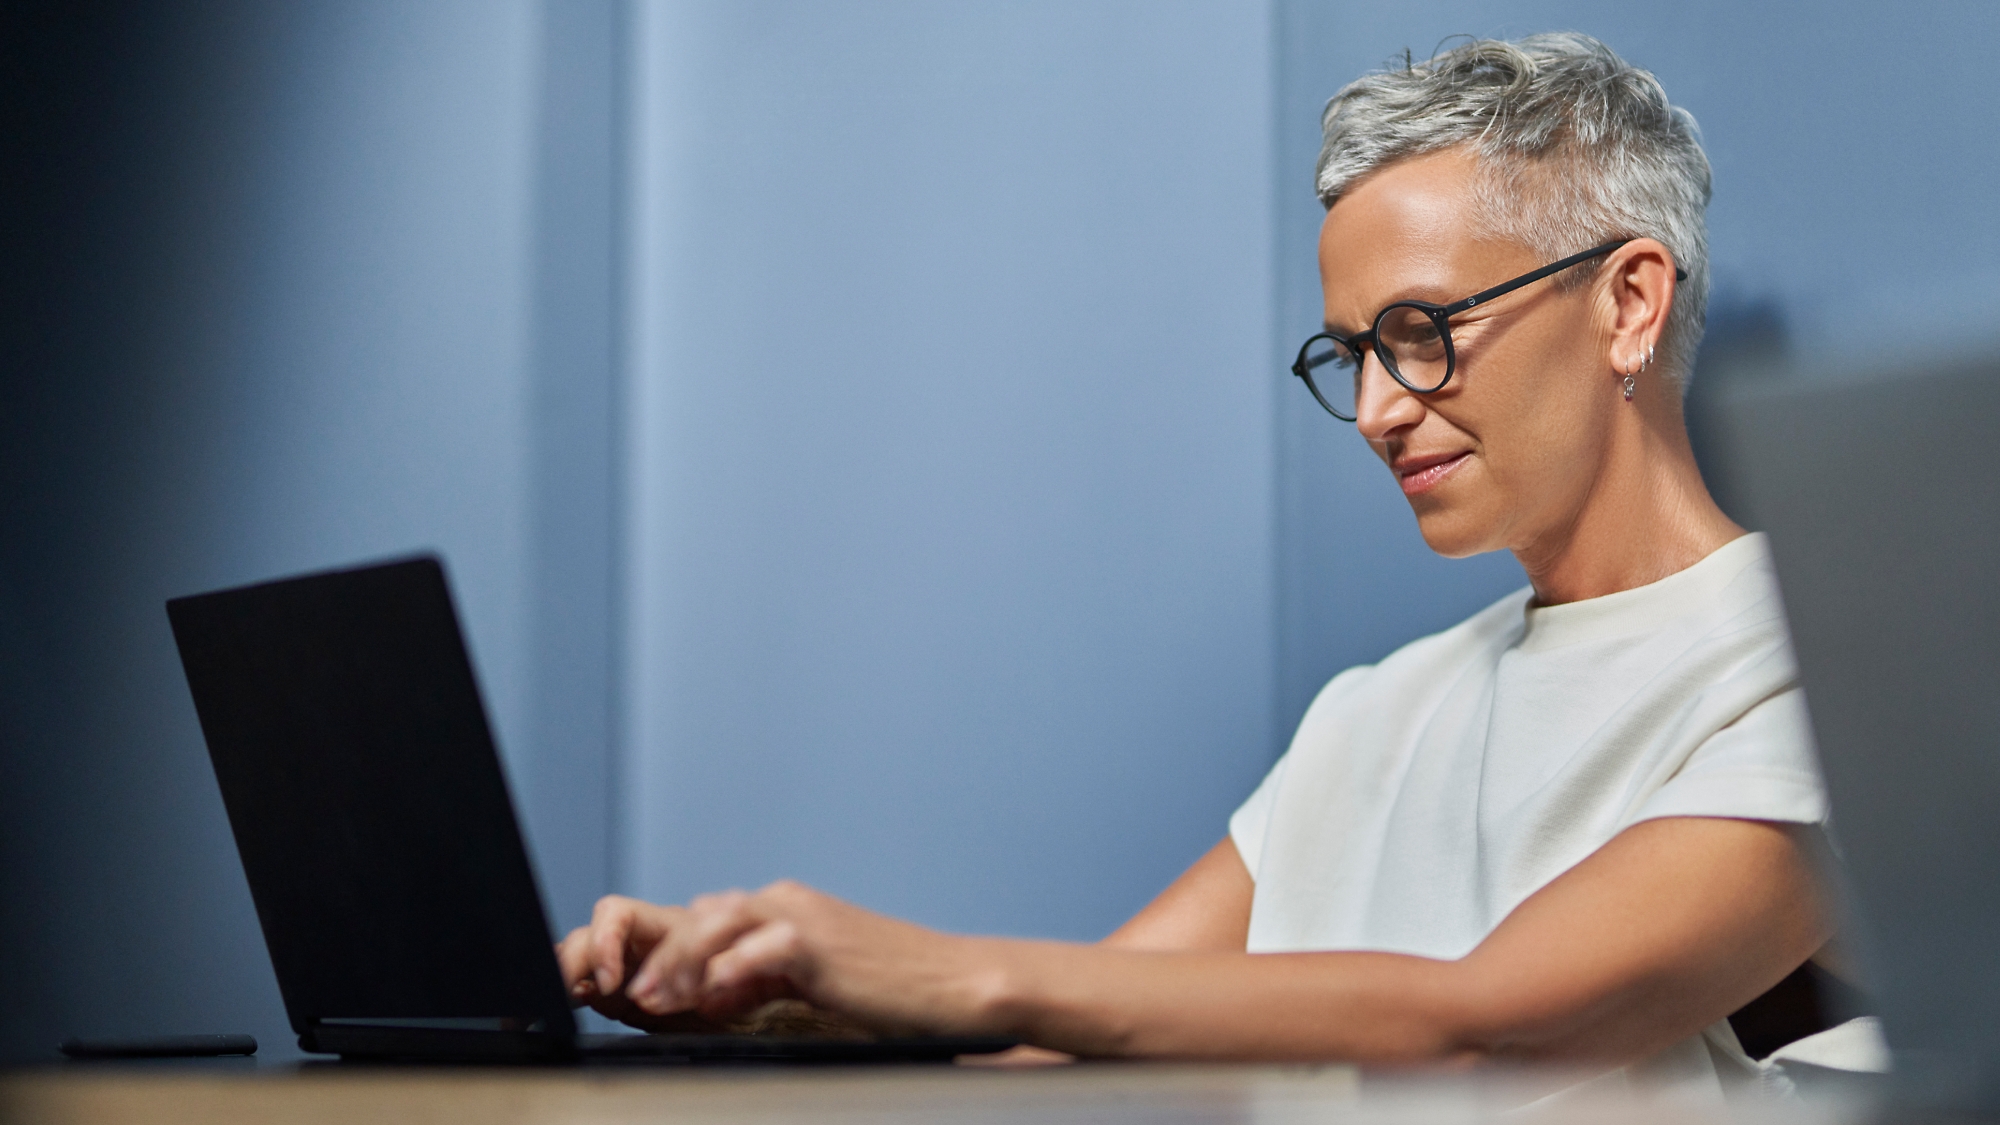 Μια ώριμη γυναίκα με κοντά γκρίζα μαλλιά που χαμογελάει και εργάζεται σε έναν φορητό υπολογιστή σε ένα σύγχρονο περιβάλλον γραφείου.